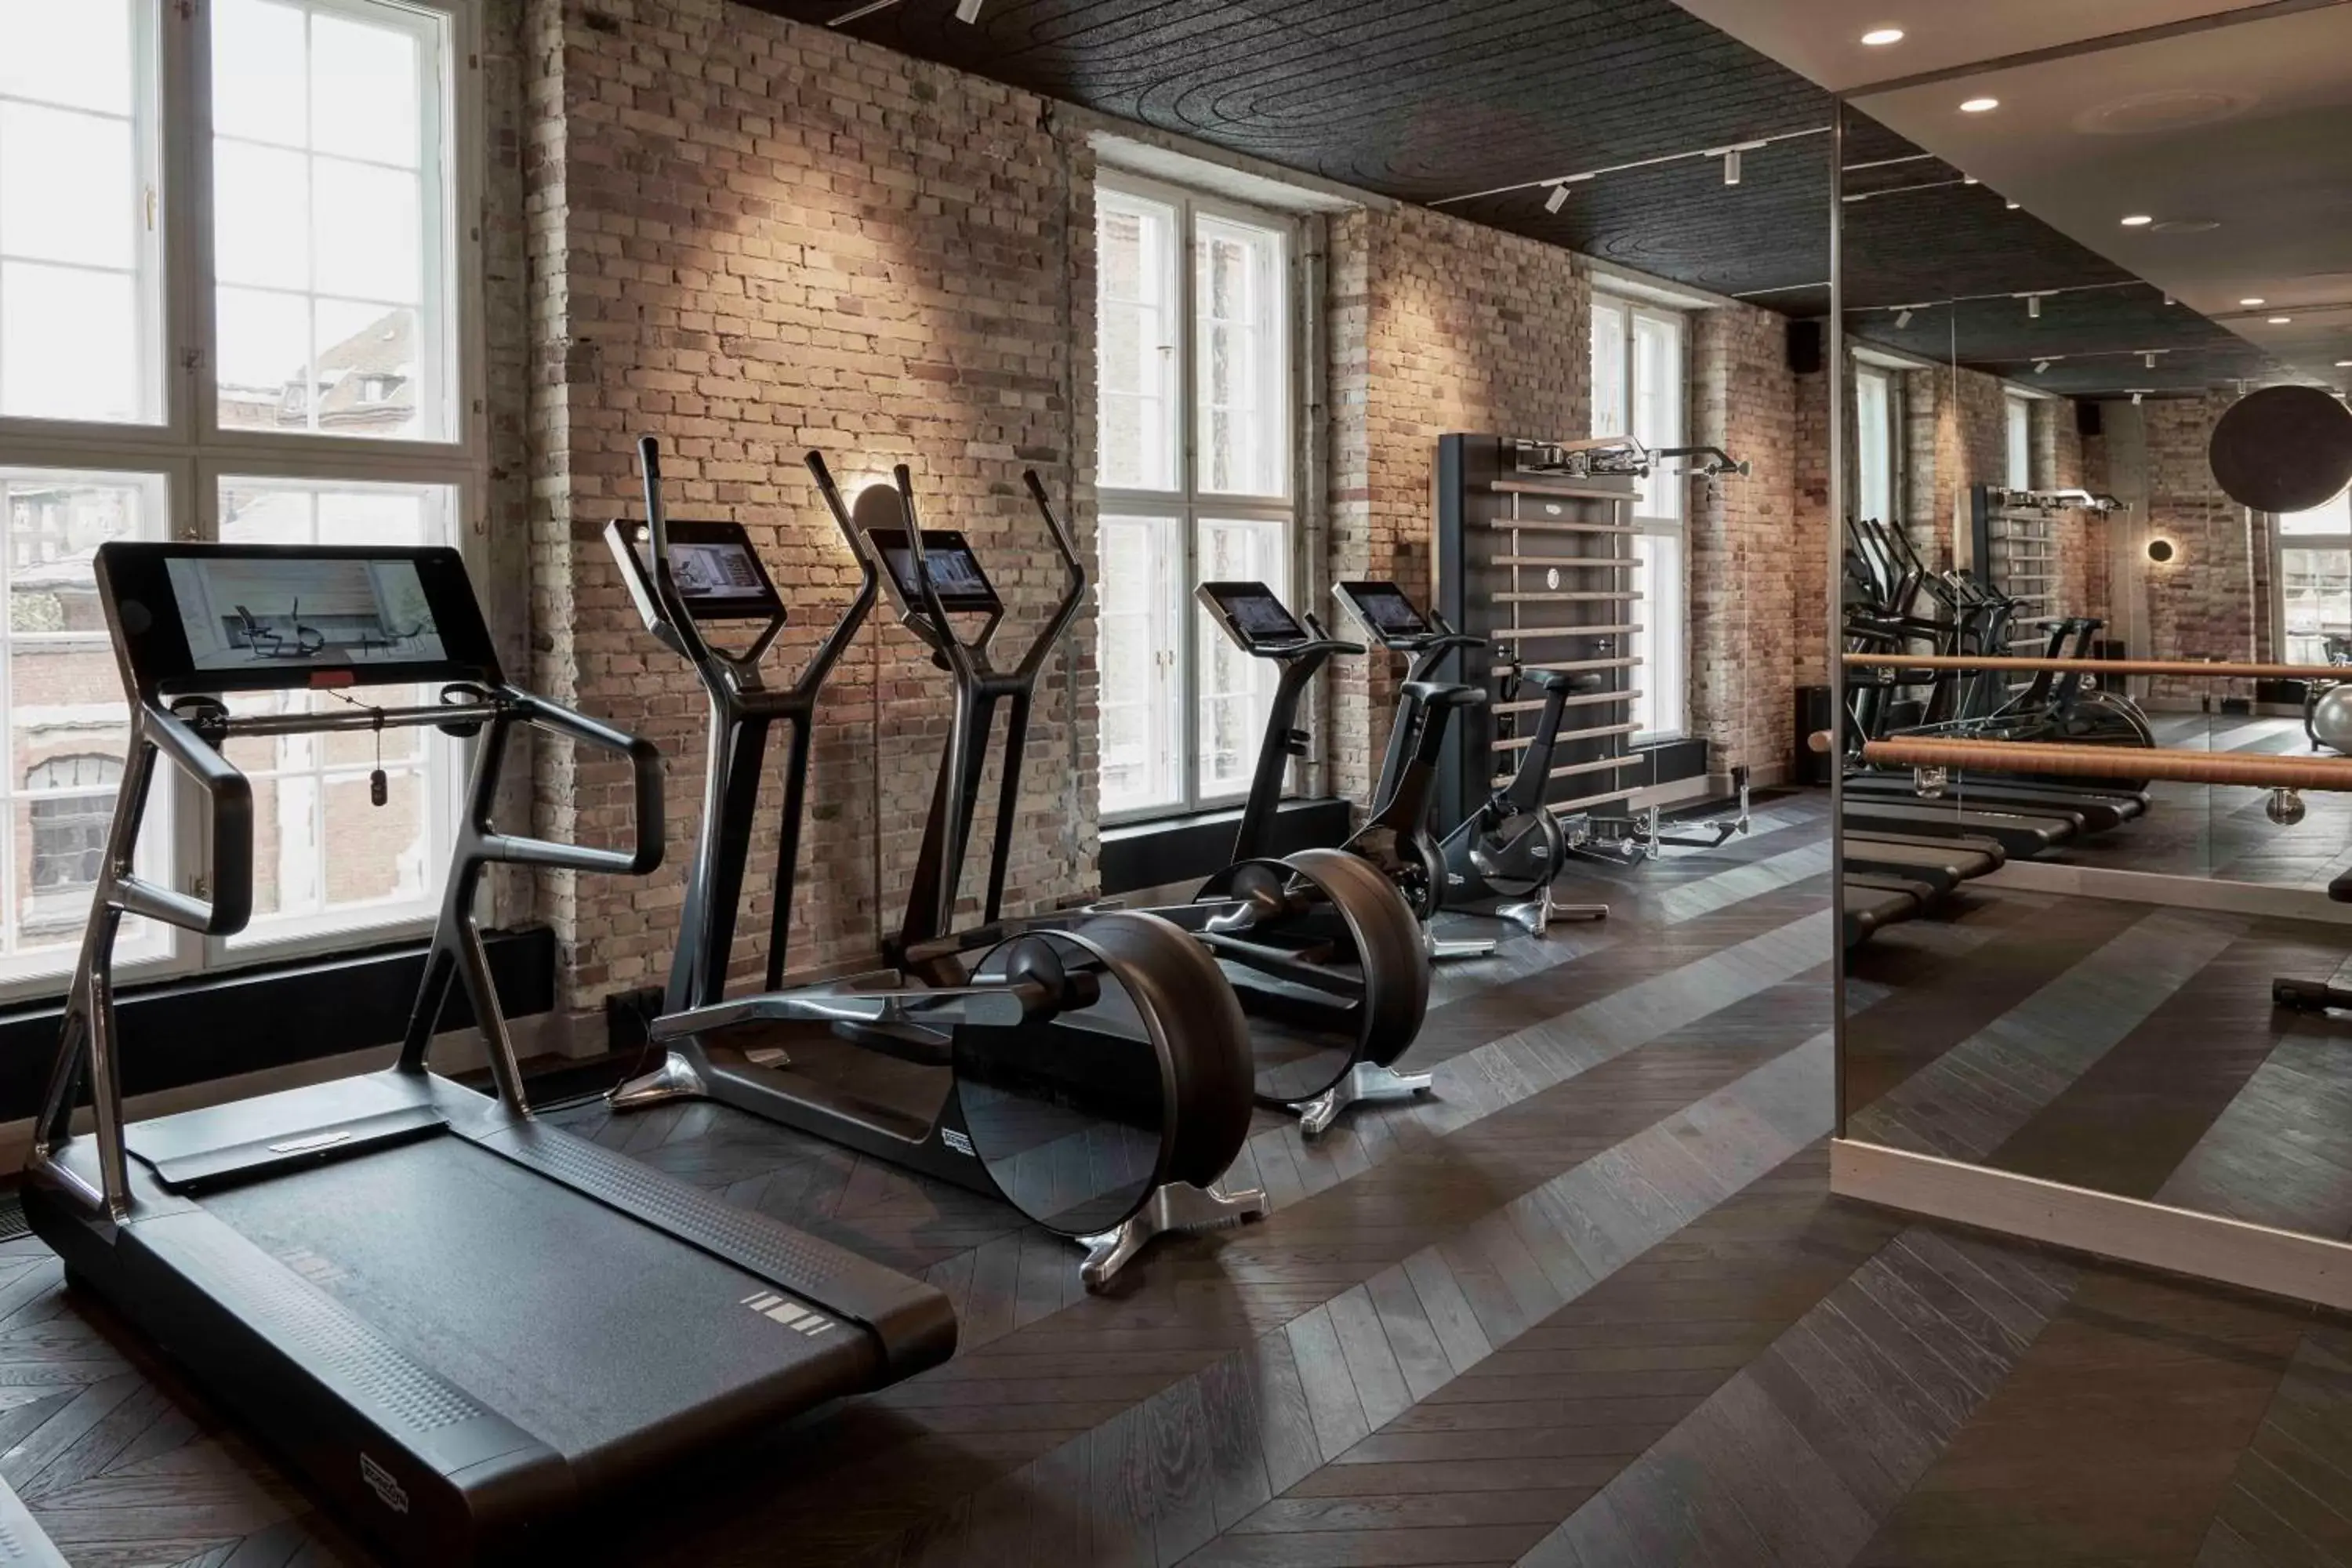 Fitness centre/facilities, Fitness Center/Facilities in Villa Copenhagen